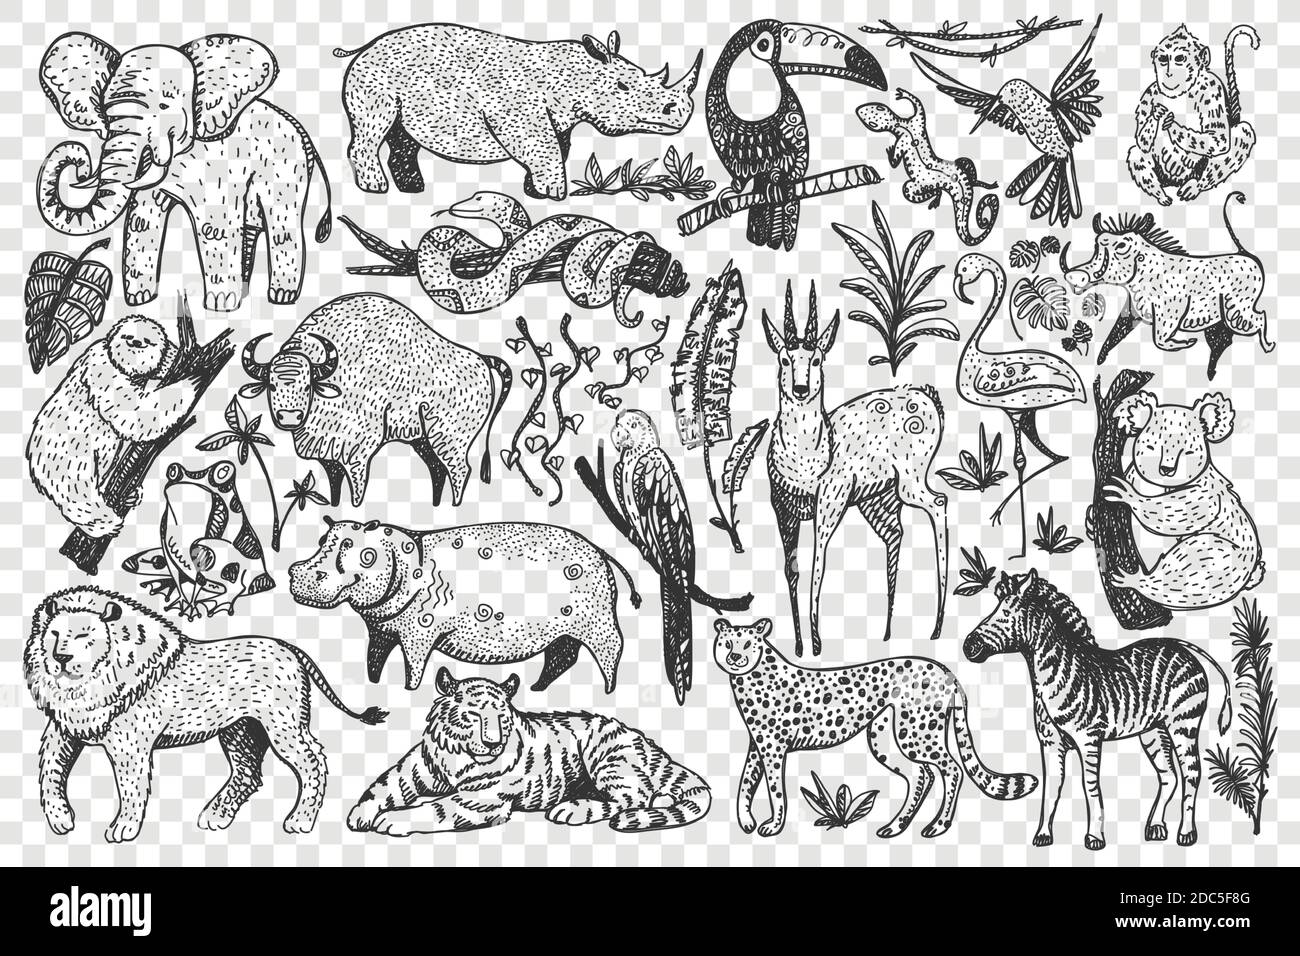 Ensemble de doodle pour animaux. Collection de drôle dessiné à la main de jolis mammifères sauvages de safari africains isolés sur fond transparent. Illustration des serpents de lion léopard singe zèbre girafe éléphant pour les enfants. Illustration de Vecteur